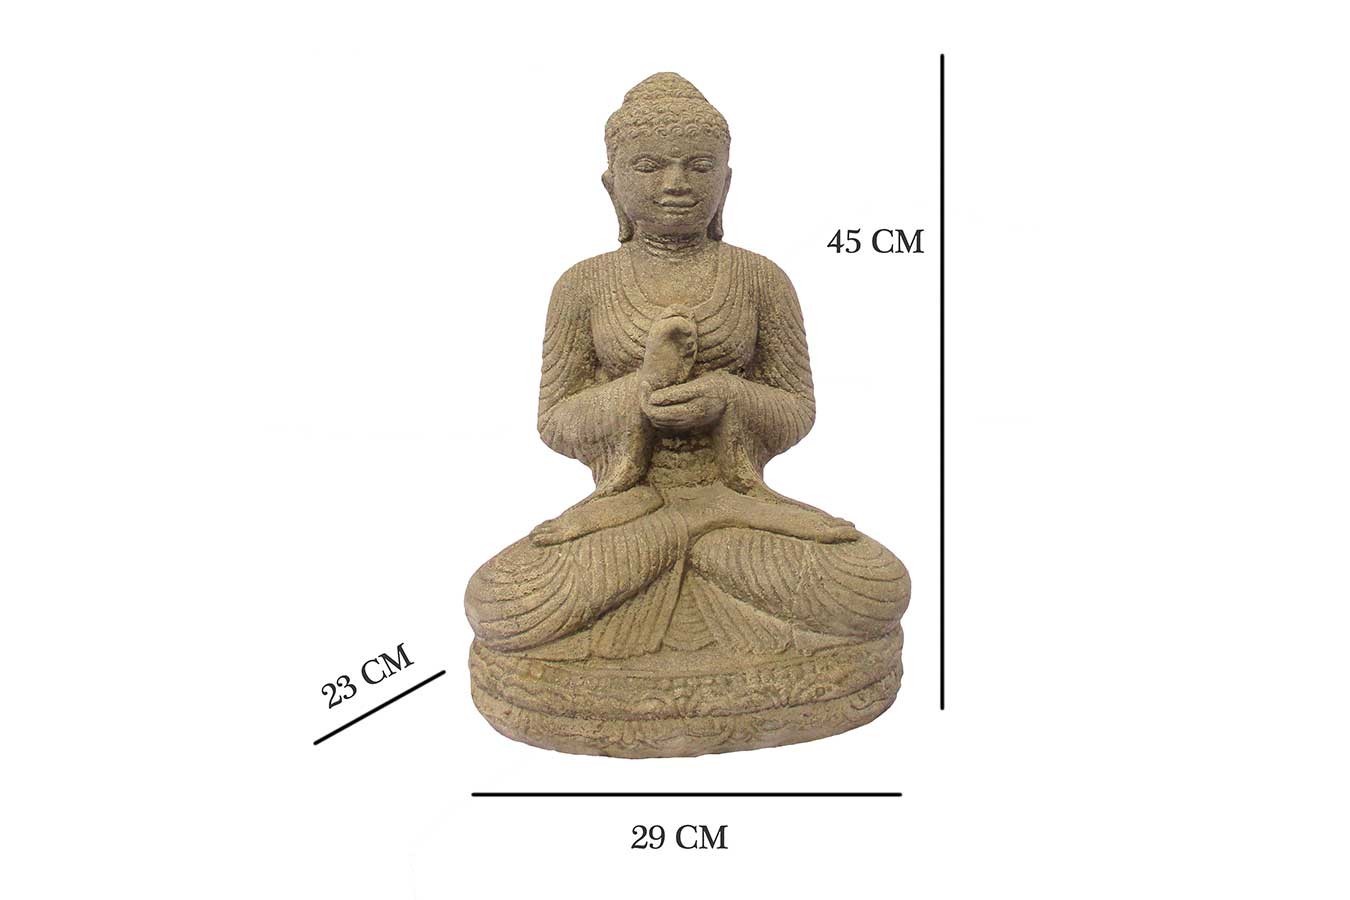 Steinfigur Sitzender Buddha Shop H Online 45 cm daslagerhaus 